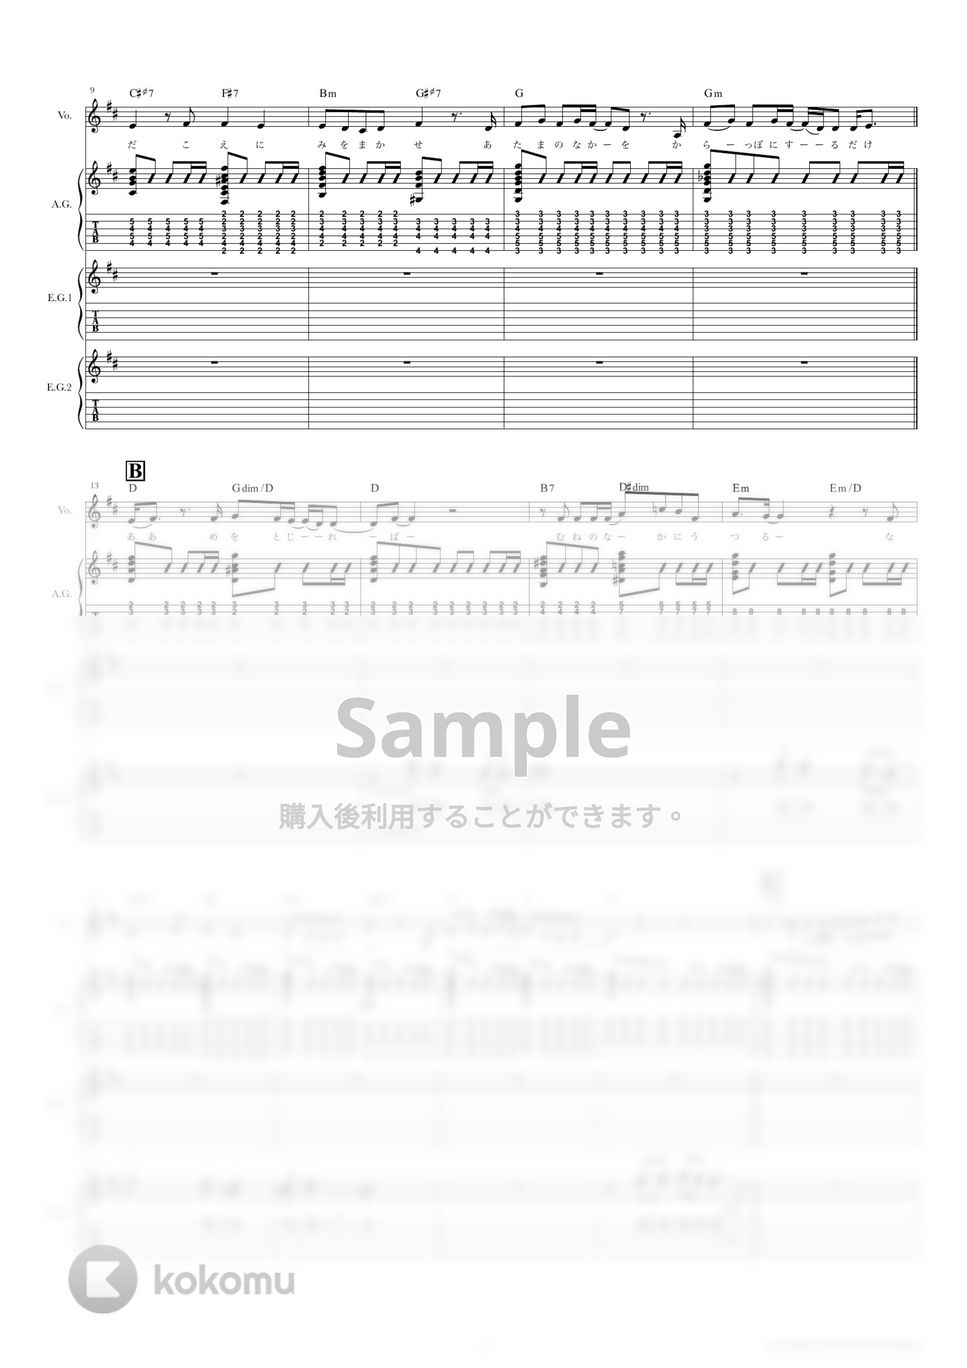 斉藤　和義 - 歌うたいのバラッド (ギタースコア・歌詞・コード付き) by TRIAD GUITAR SCHOOL